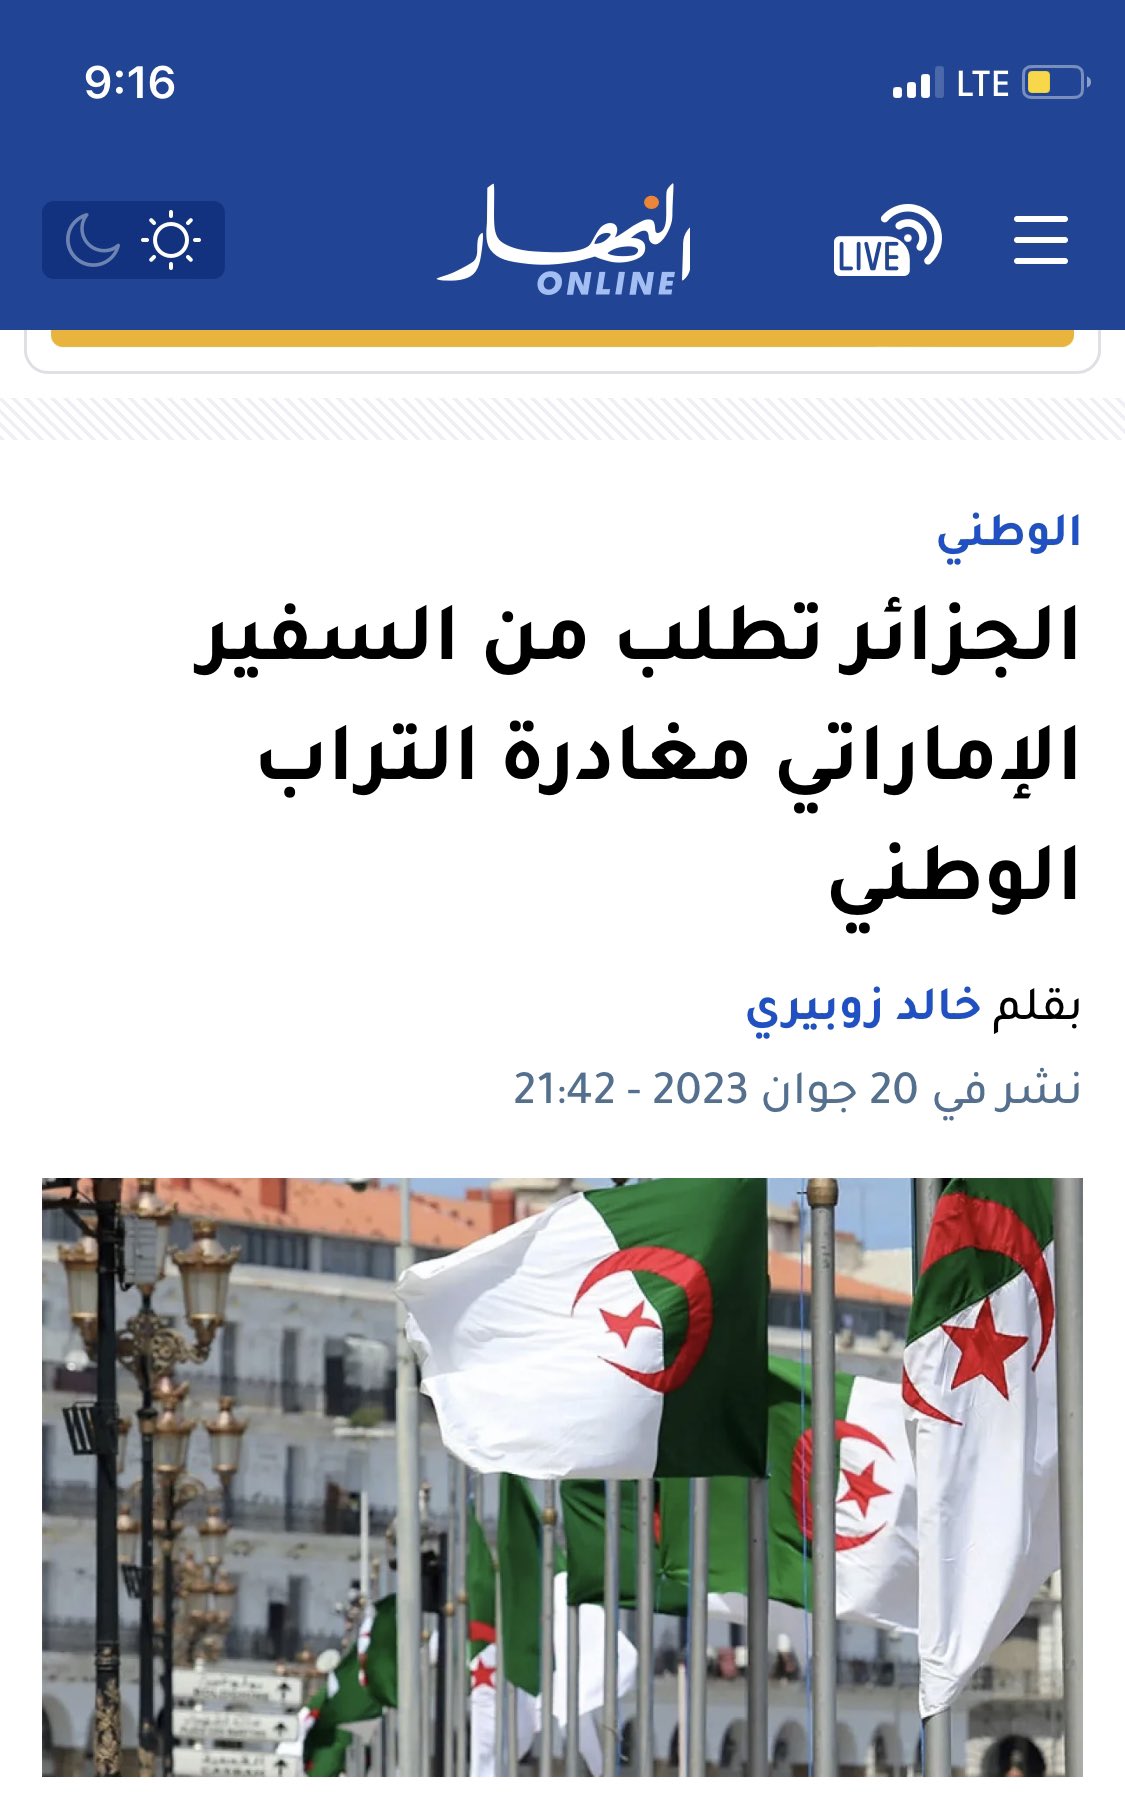 الجزائر تطلب من السفير الإماراتي مغادرة البلاد